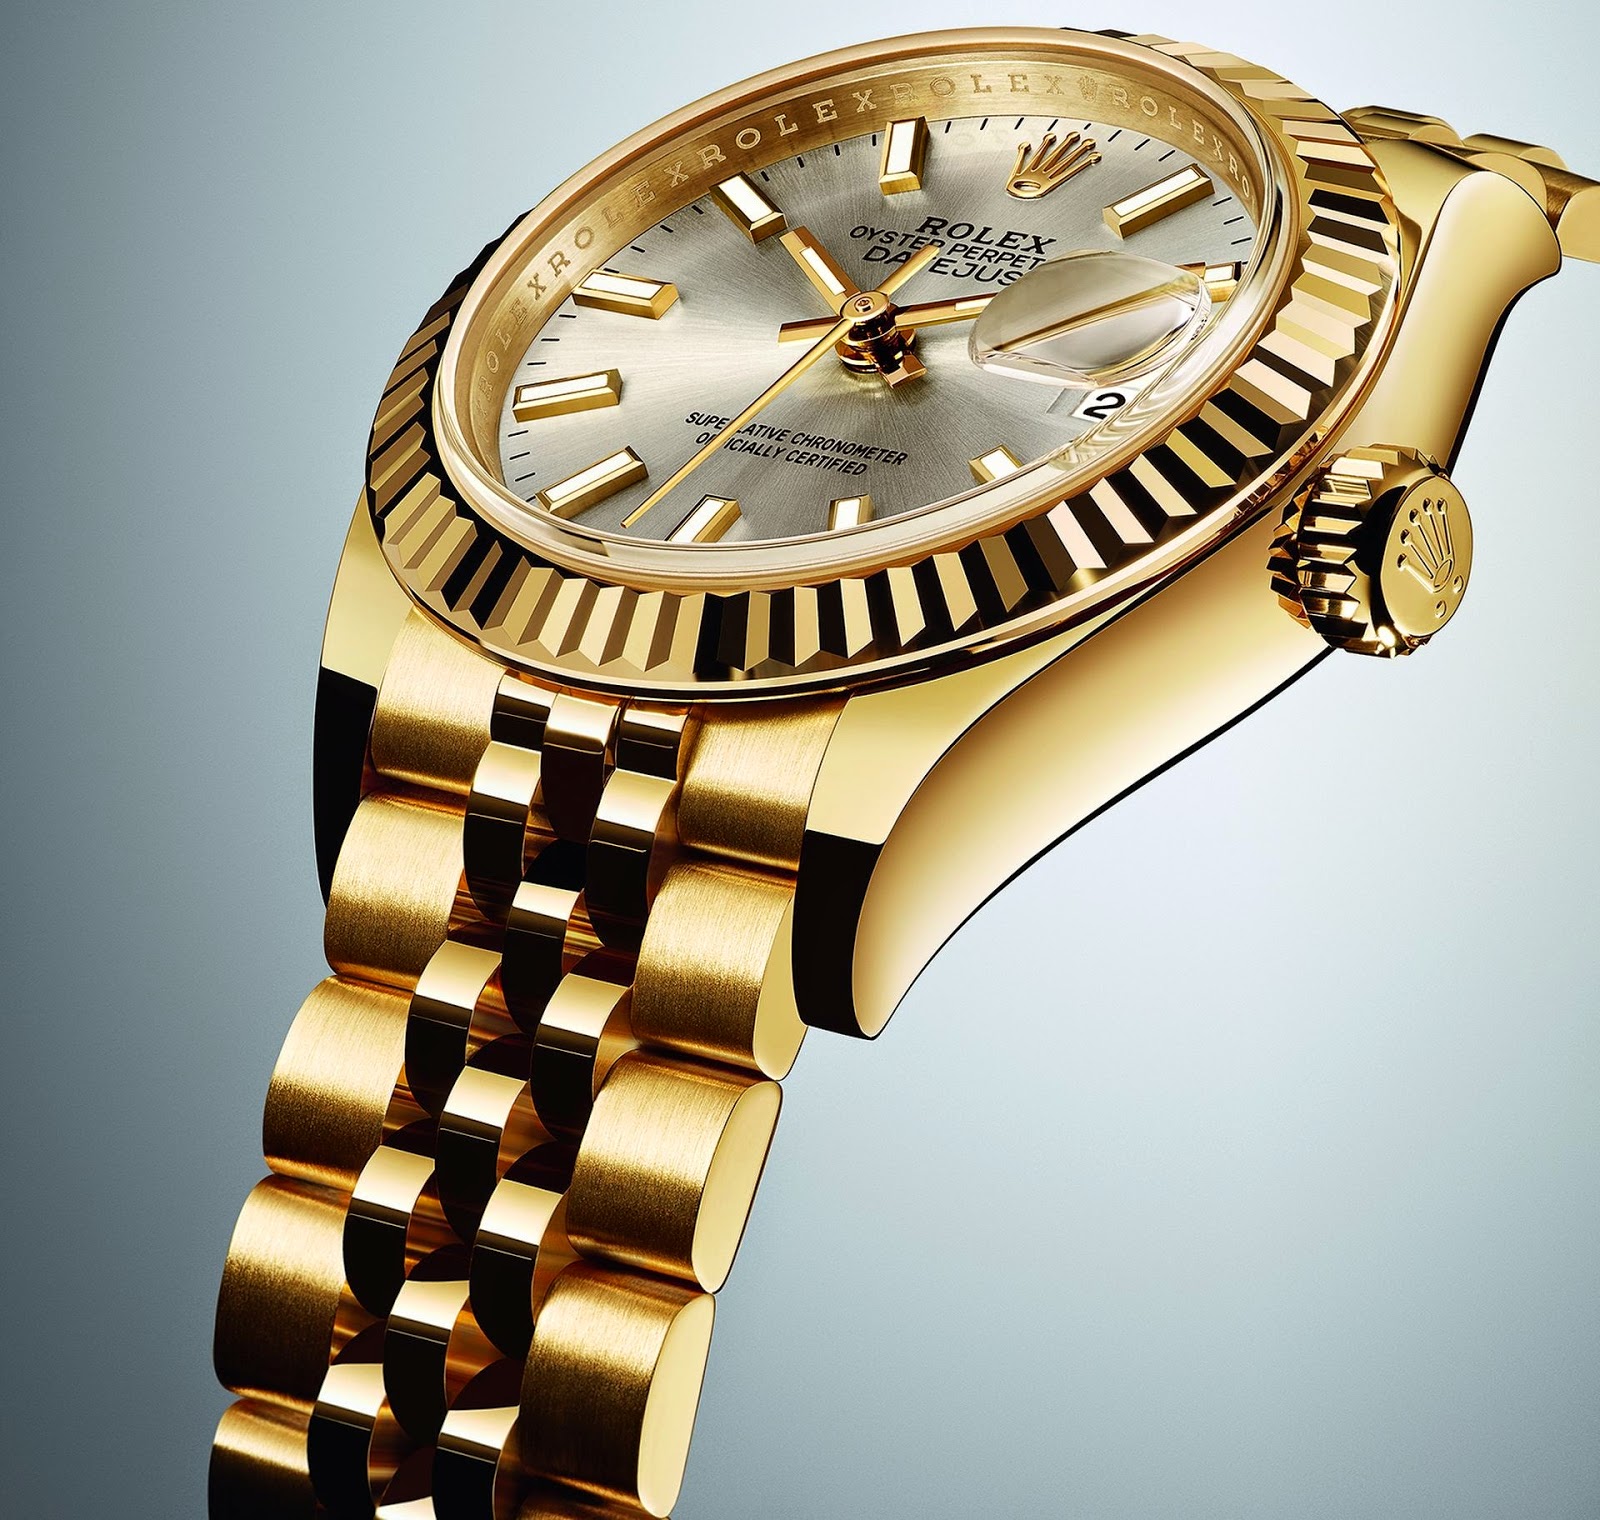 Дешевые часы ролекс. Rolex Datejust Gold. Золотые часы ролекс Datejust. Rolex Oyster Perpetual Datejust. Rolex Datejust золотые мужские.